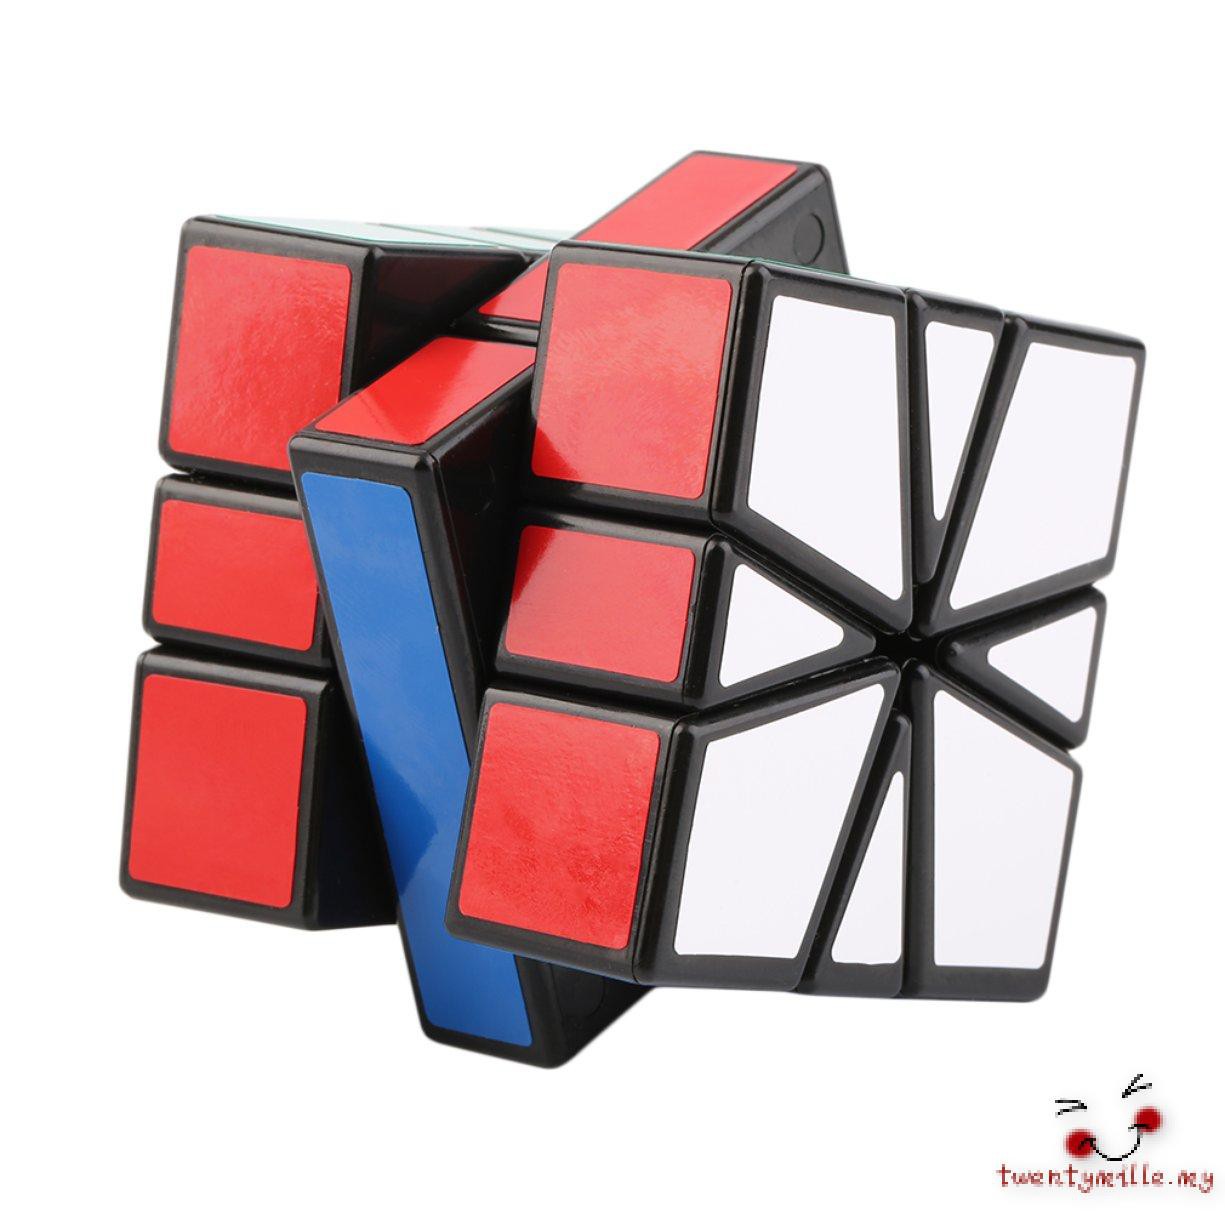 Đồ Chơi Khối Rubik Một Chữ Nhật Bằng Nhựa Nhiều Màu Sắc Sq-1